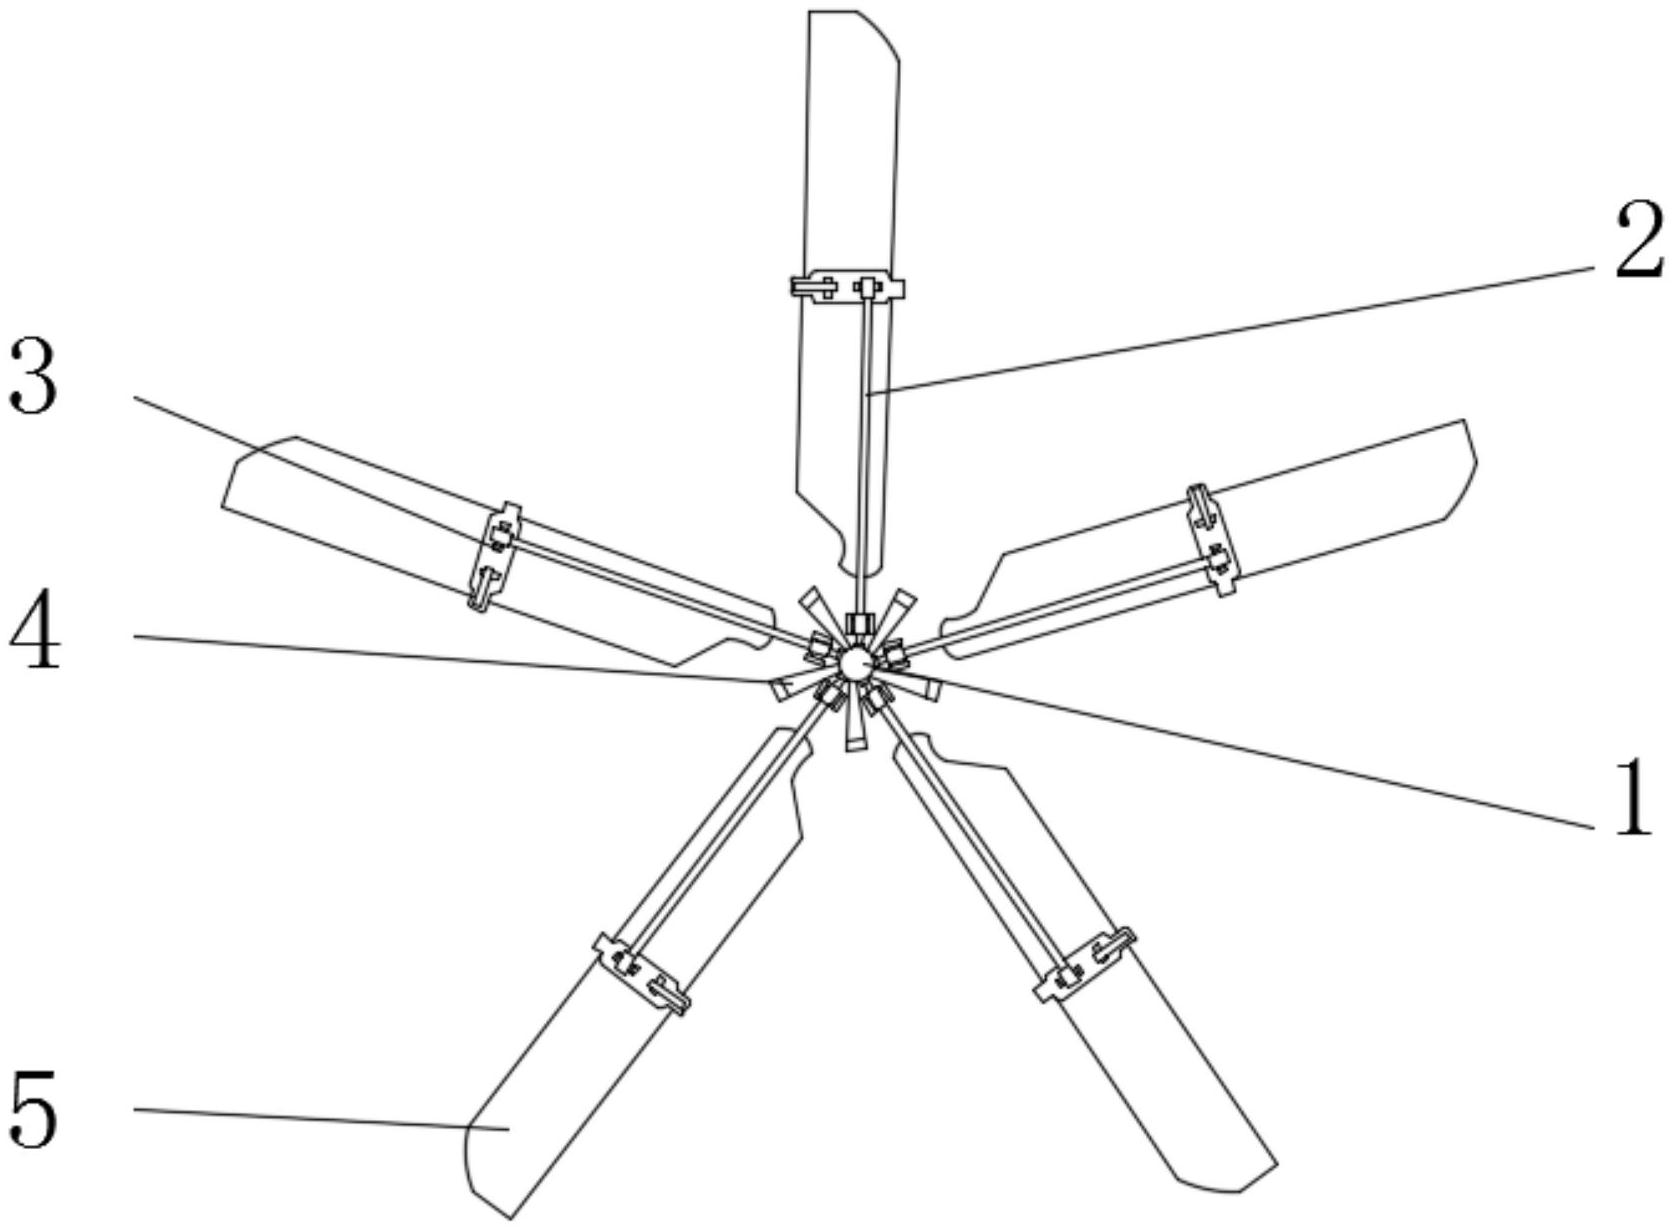 直升机桨叶结构图片